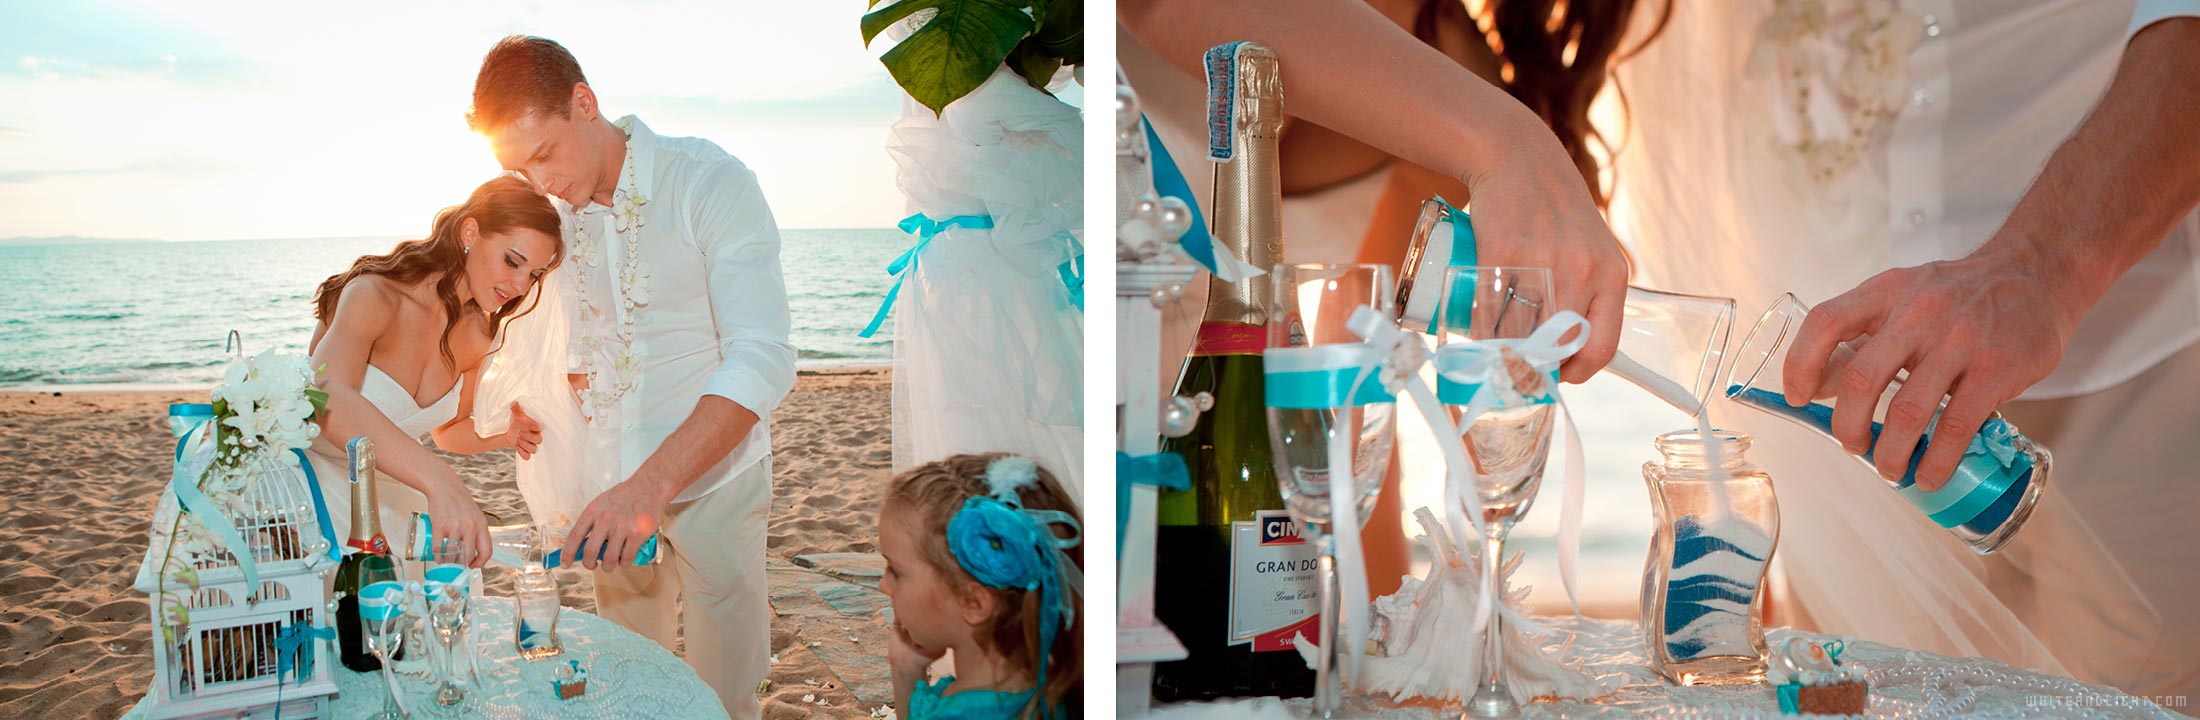 свадьба на берегу моря фото